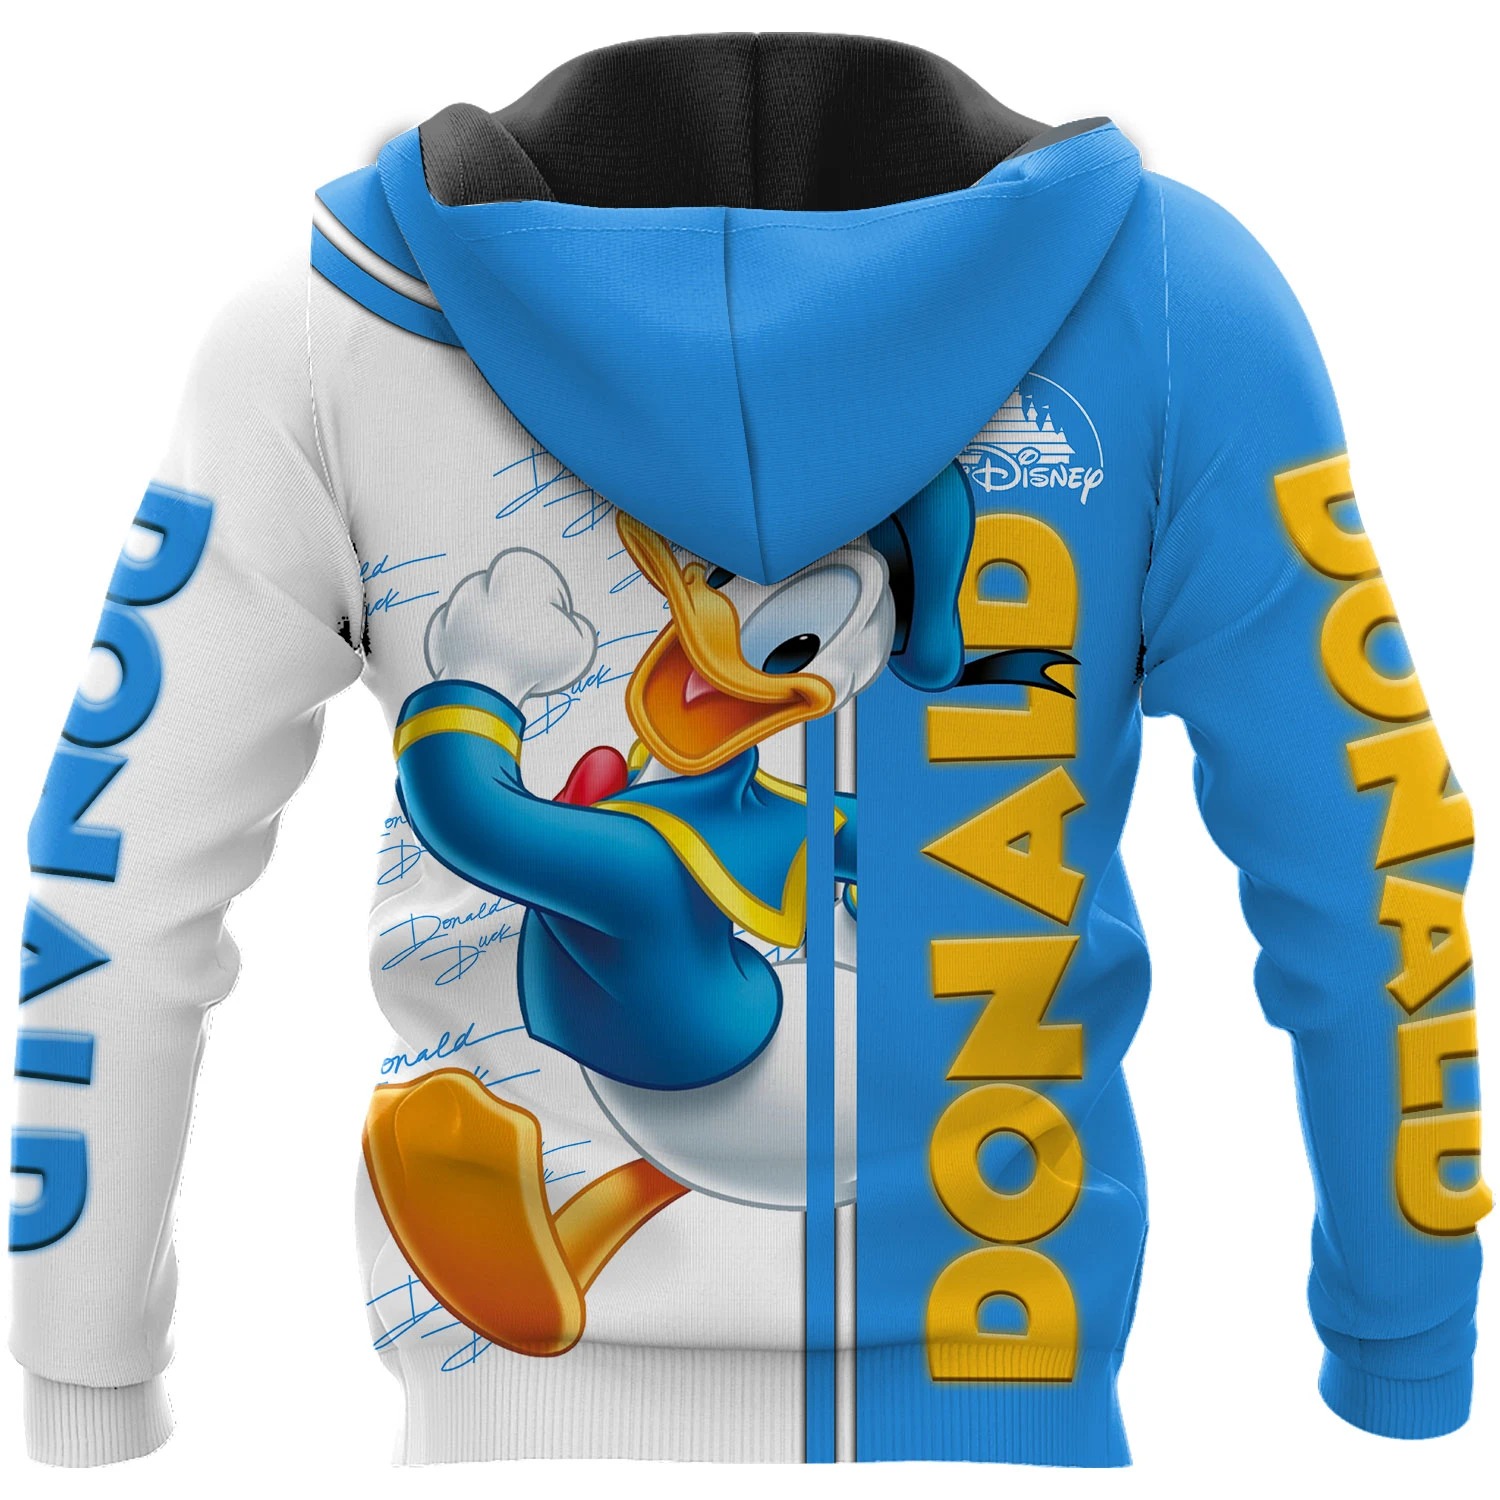 Donald duck disney 3d hoodie 2